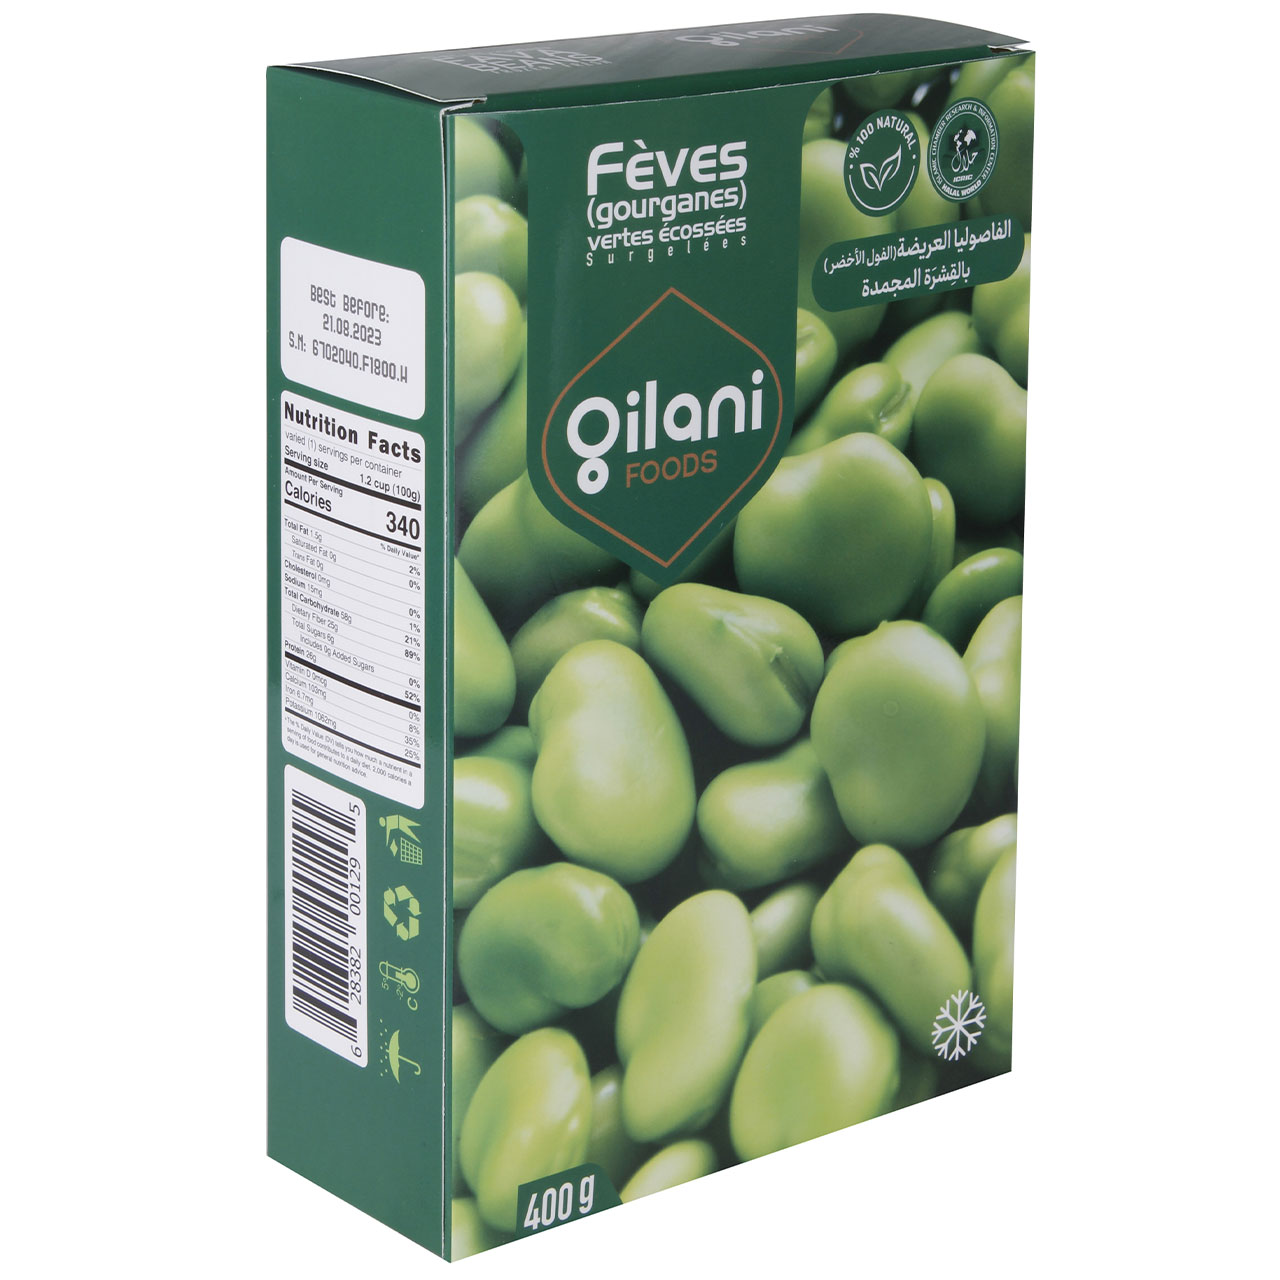 Gilani Frozen Shied Green Fava Beans